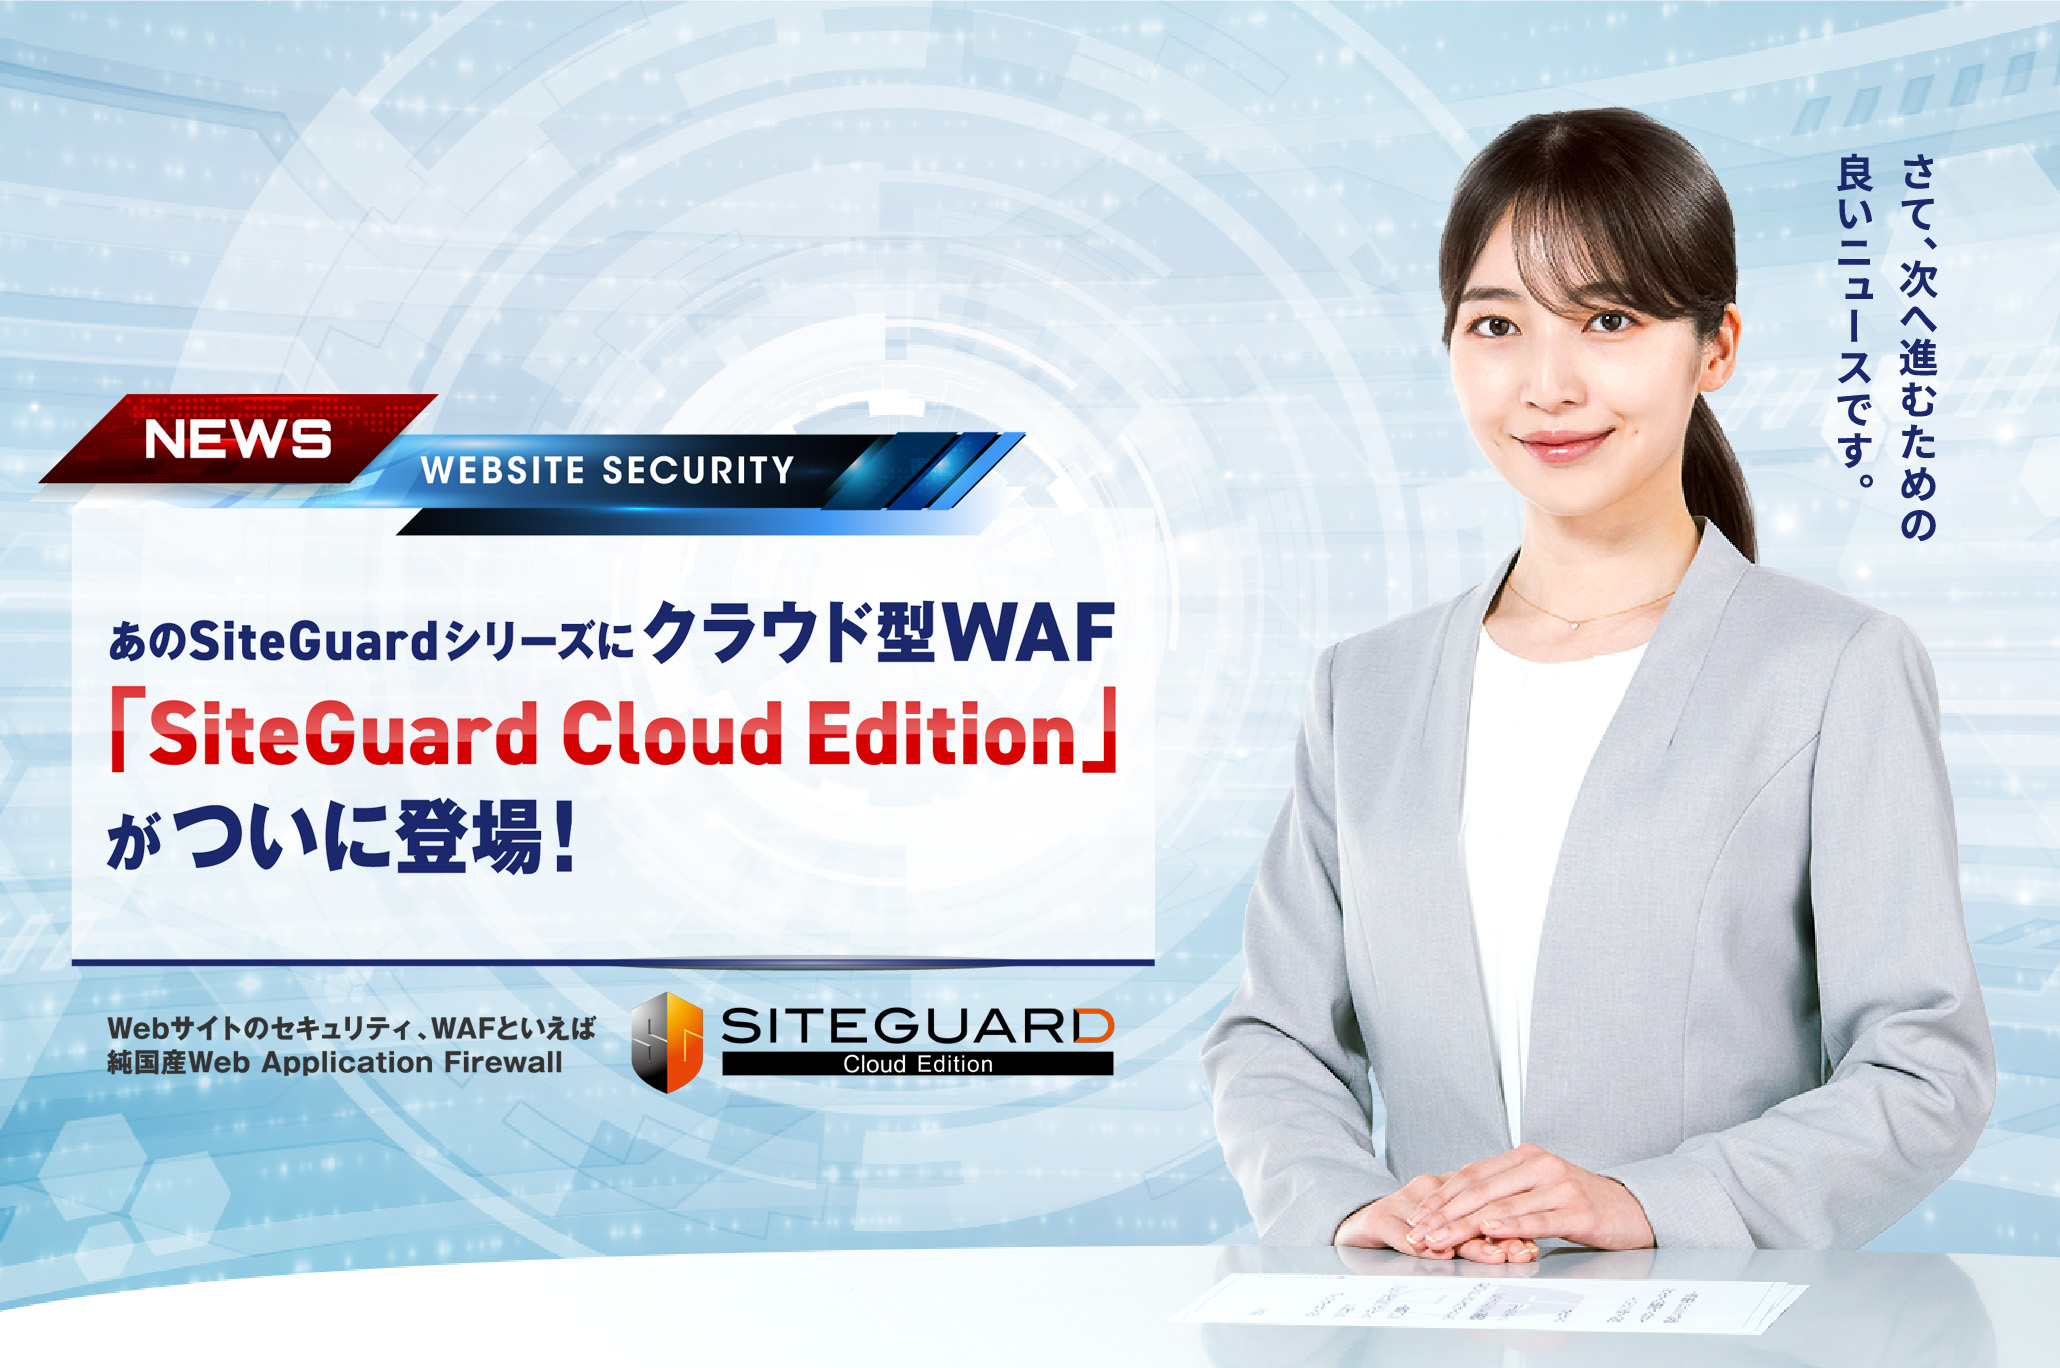 クラウド型WAF 「SiteGuard Cloud Edition」登場